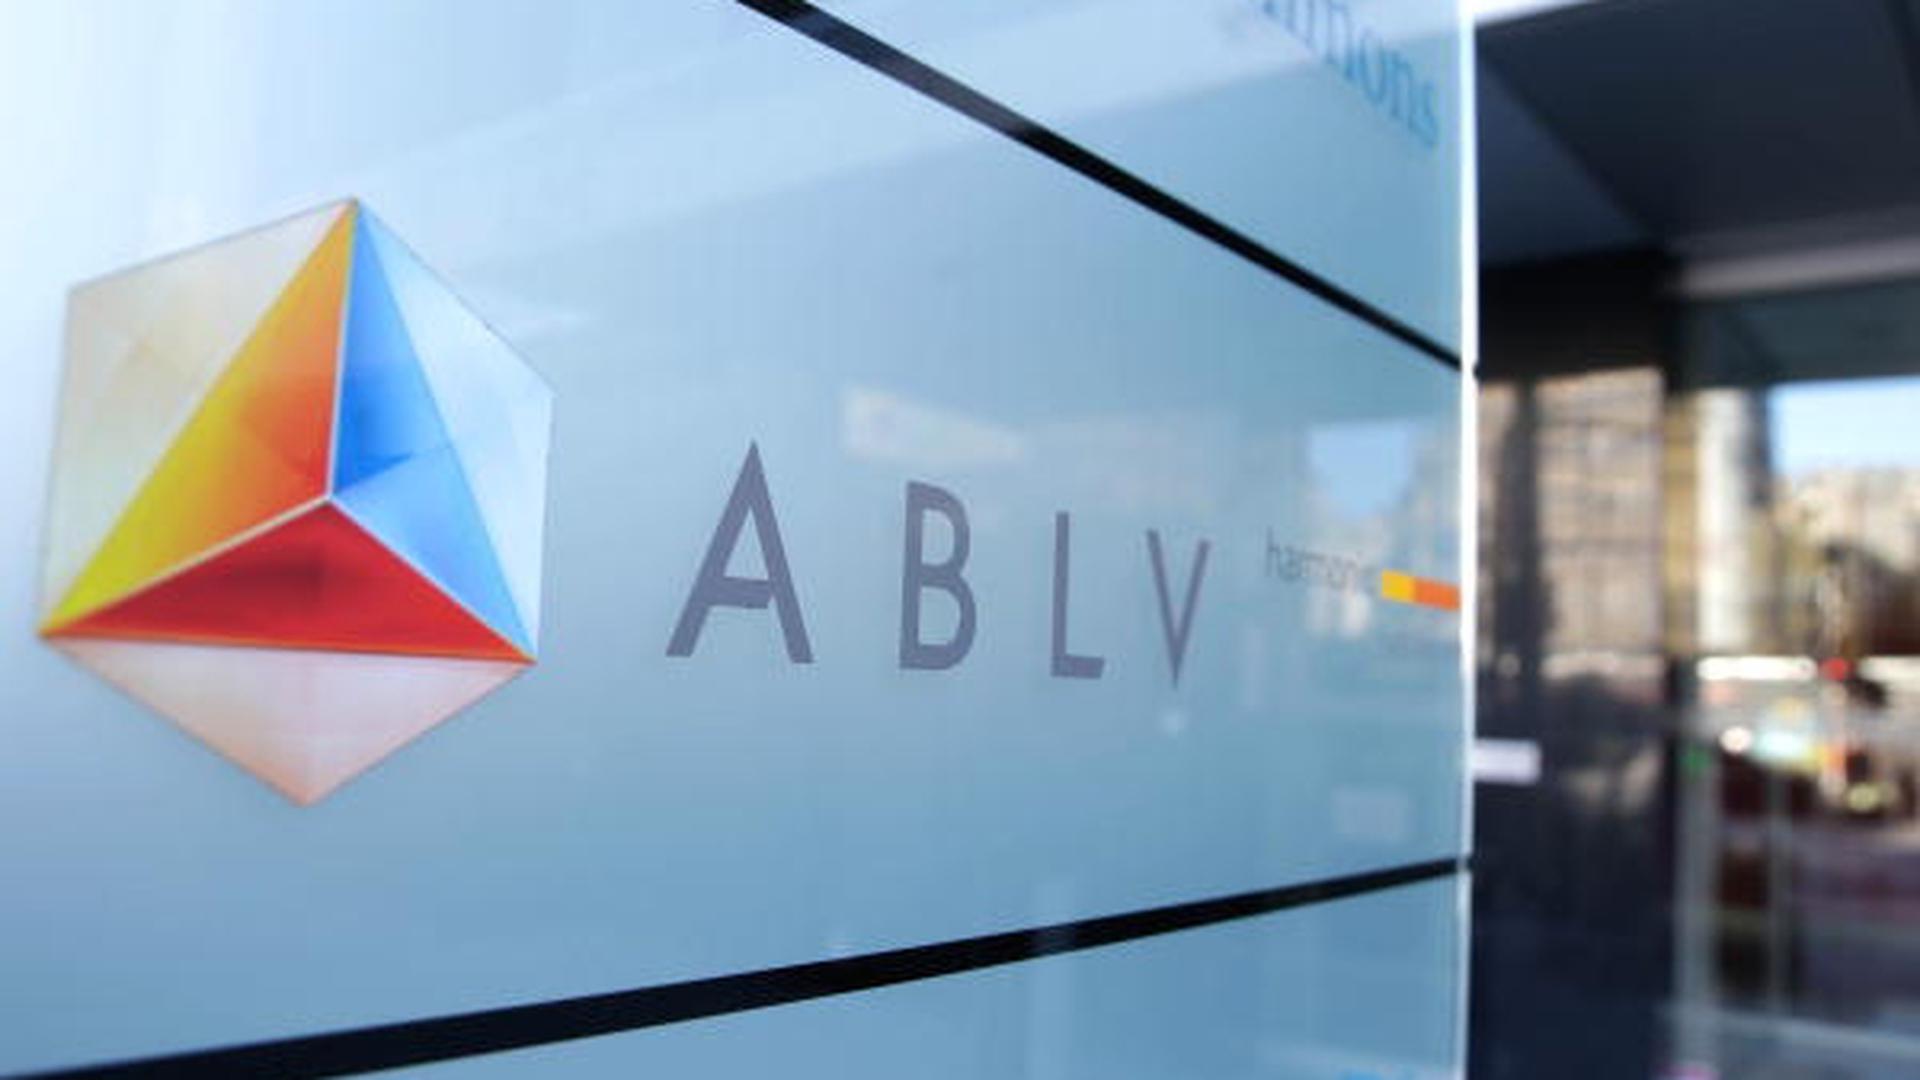 Aucune information n'est disponible jusqu'à présent sur le sort de la filiale luxembourgeoise de la banque lettone ABLV.